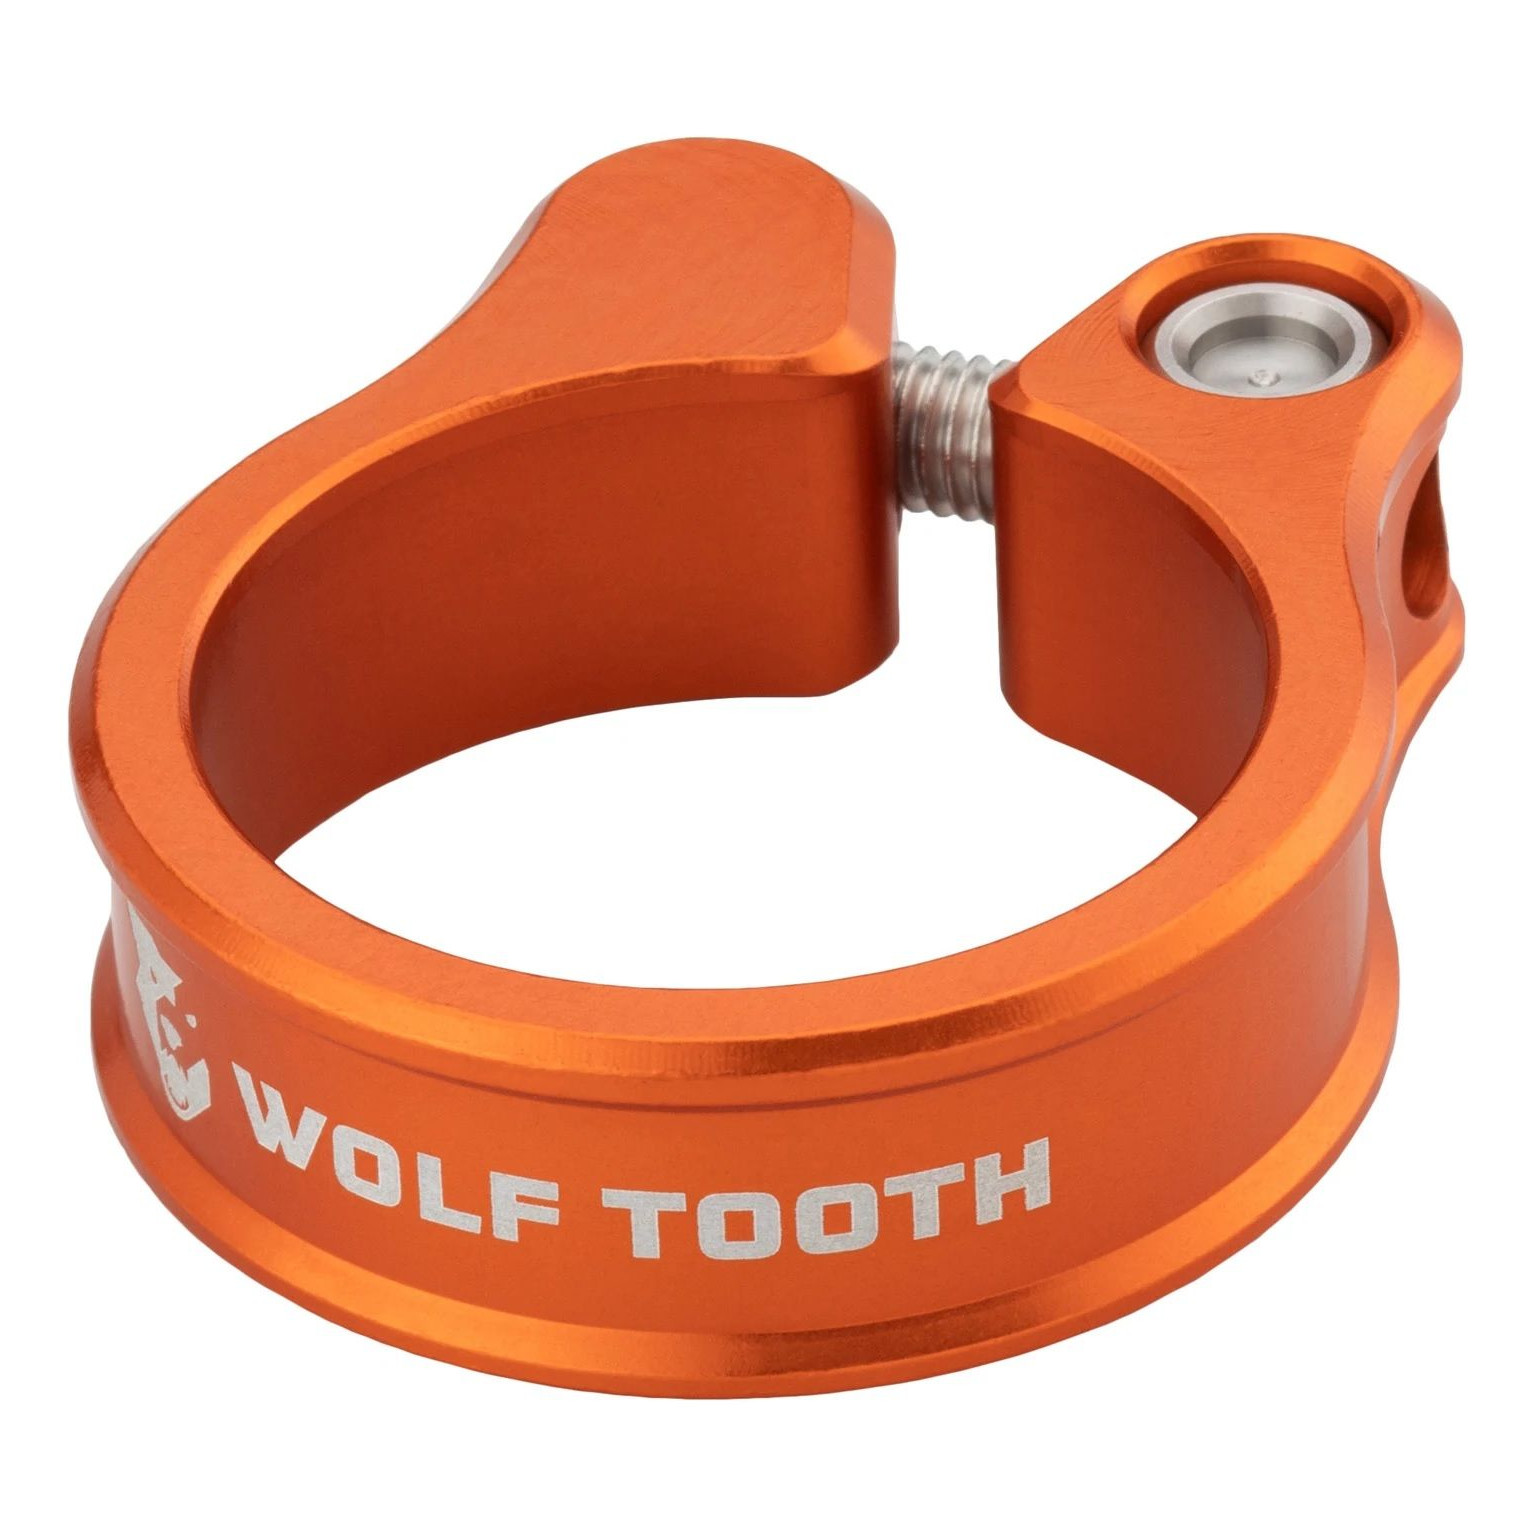 Bild von Wolf Tooth Sattelklemme - 36.4mm - orange